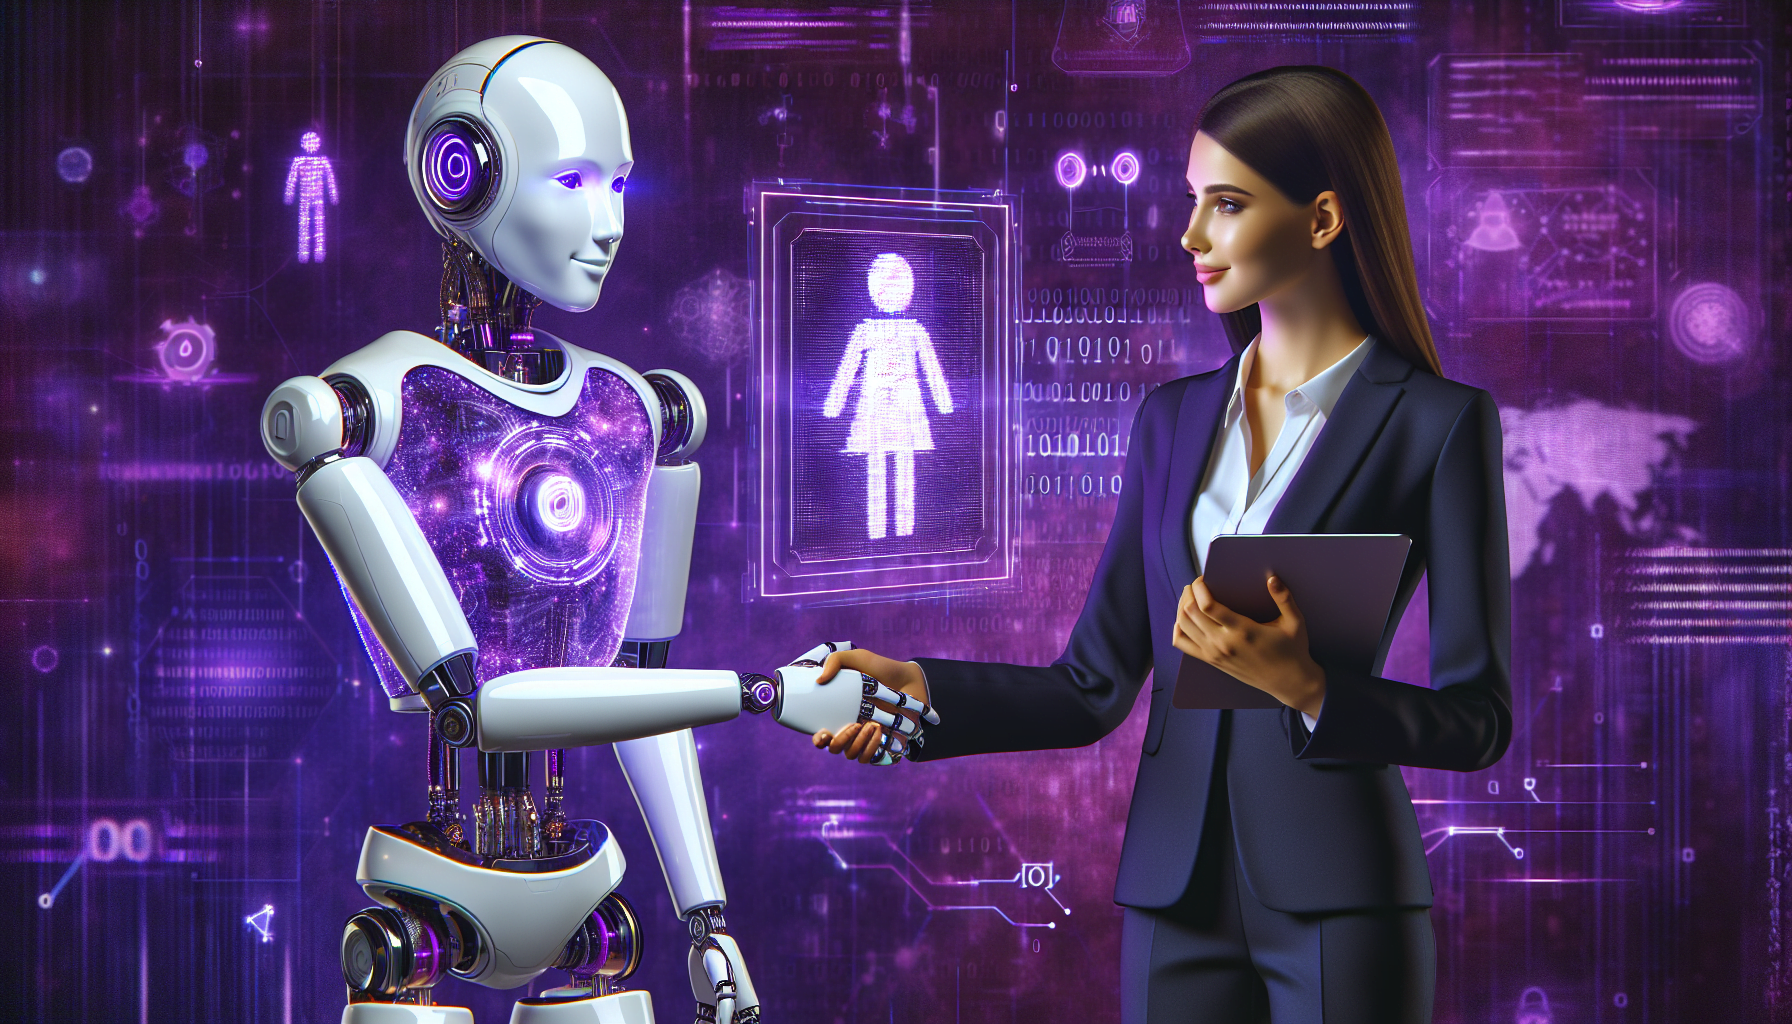 robot humanoid serrant main professionnelle cybersecurite noire theme violet codes chiffrement donnees interface technologique ecrans futuristes.jpeg